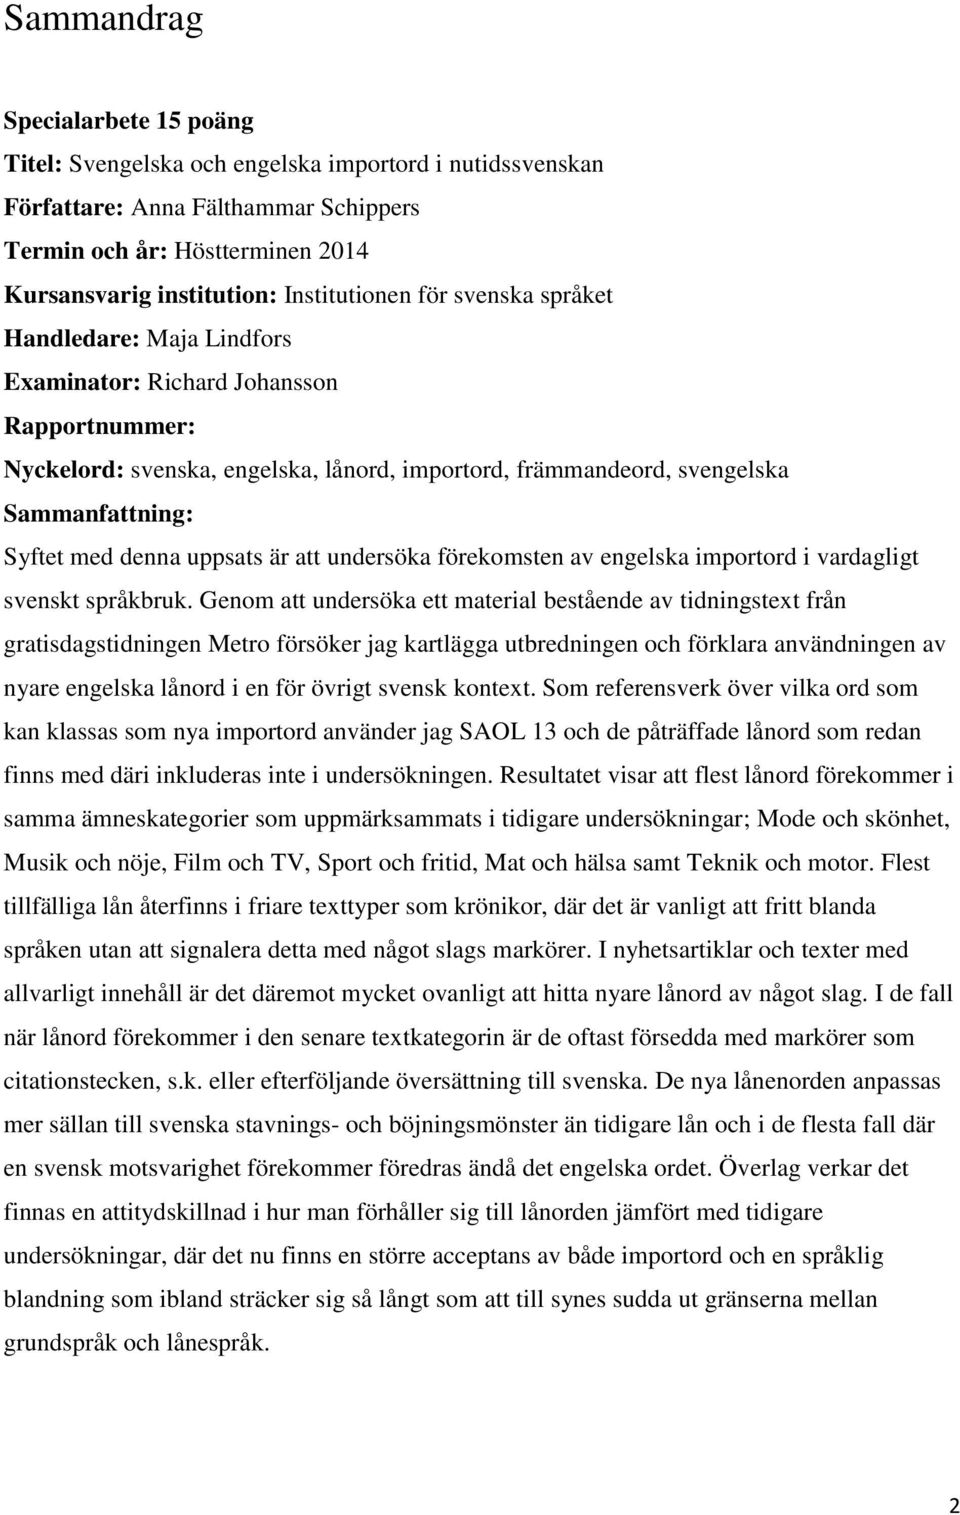 Syftet med denna uppsats är att undersöka förekomsten av engelska importord i vardagligt svenskt språkbruk.